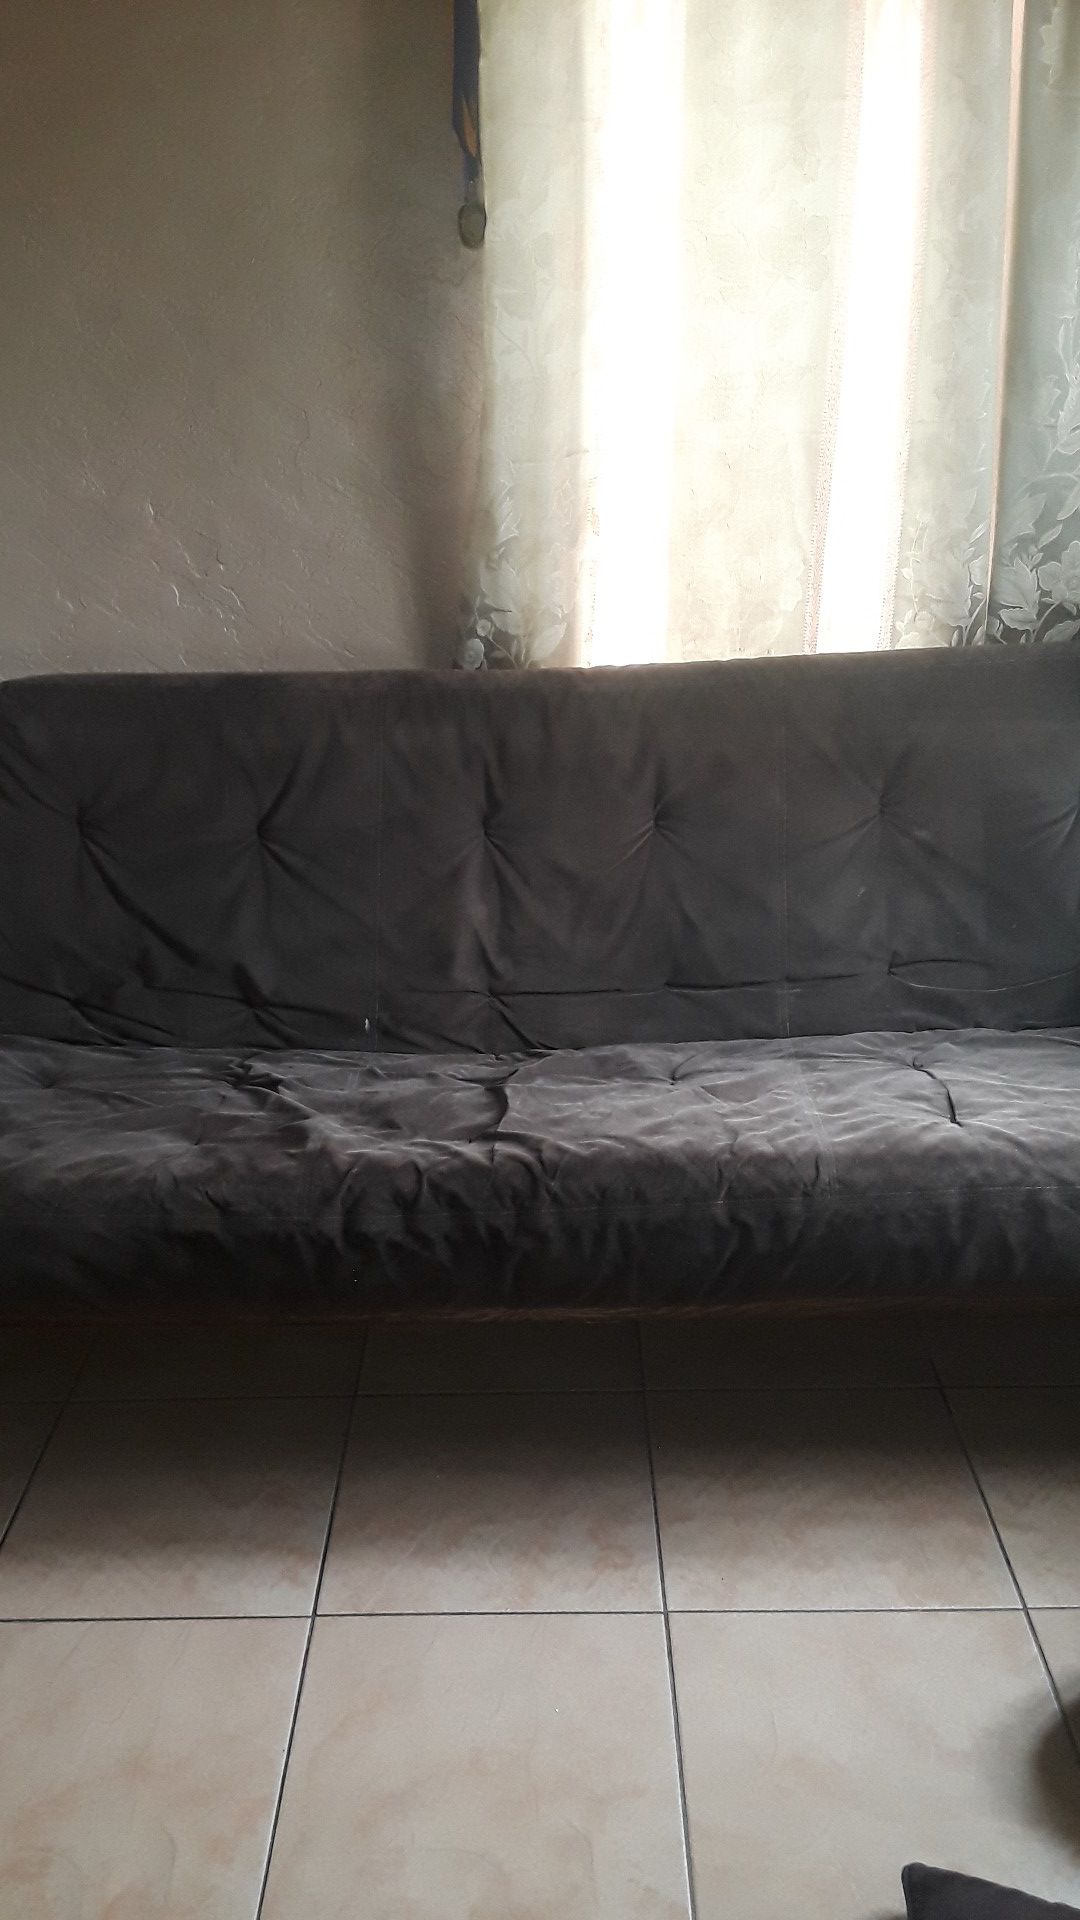 Free sofas